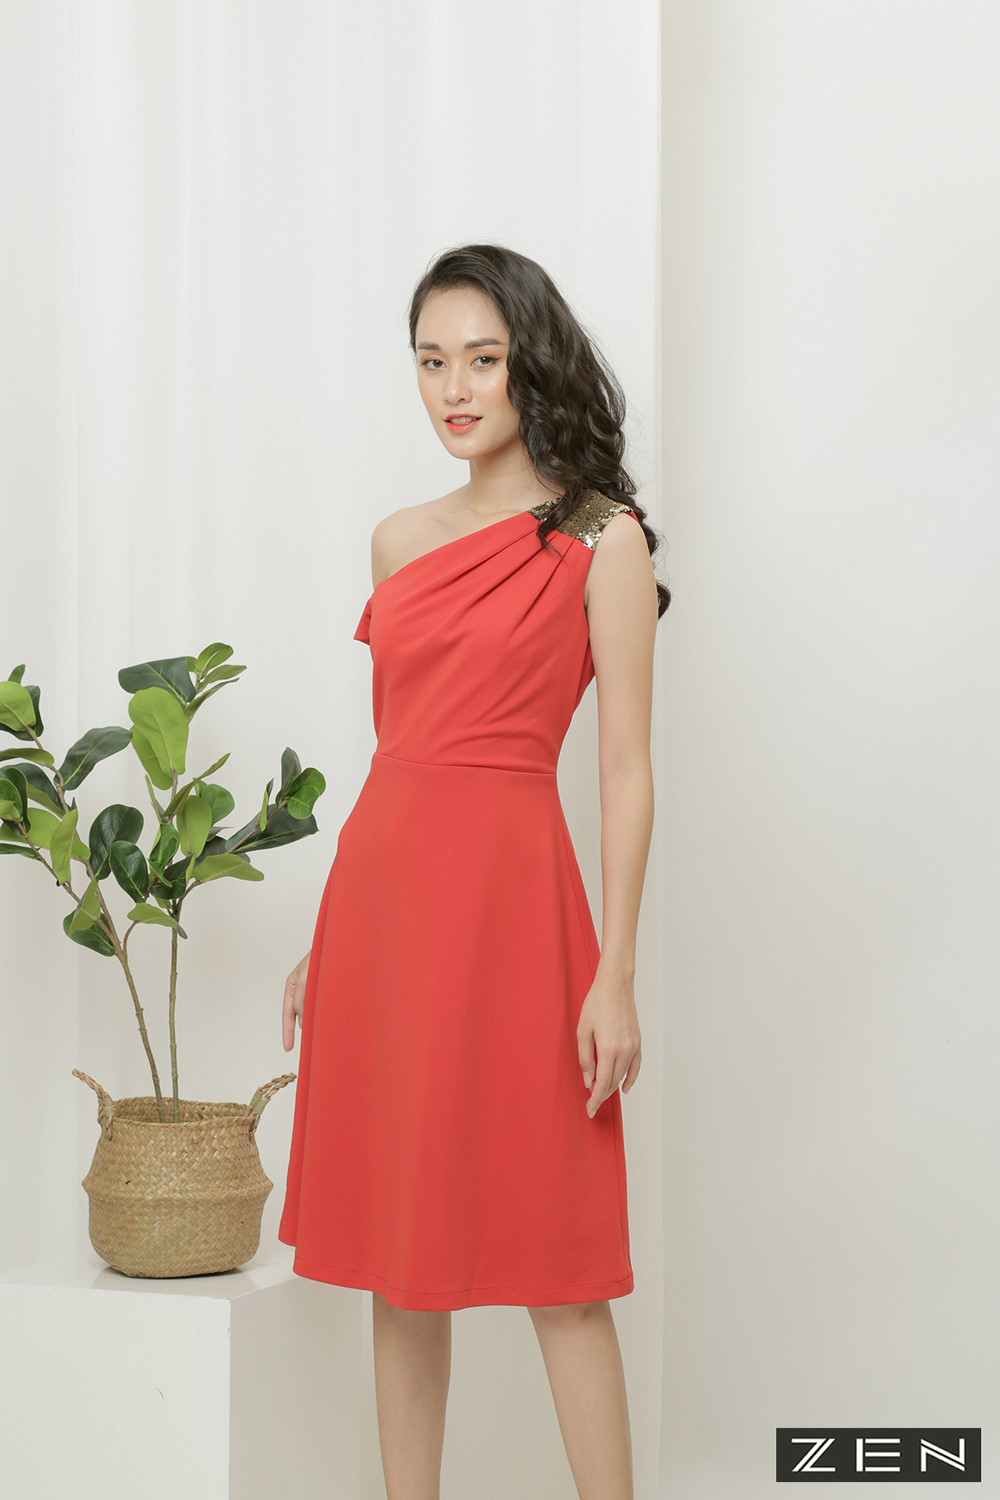 Váy xòe tím đỏ cuốn hoa - 3952